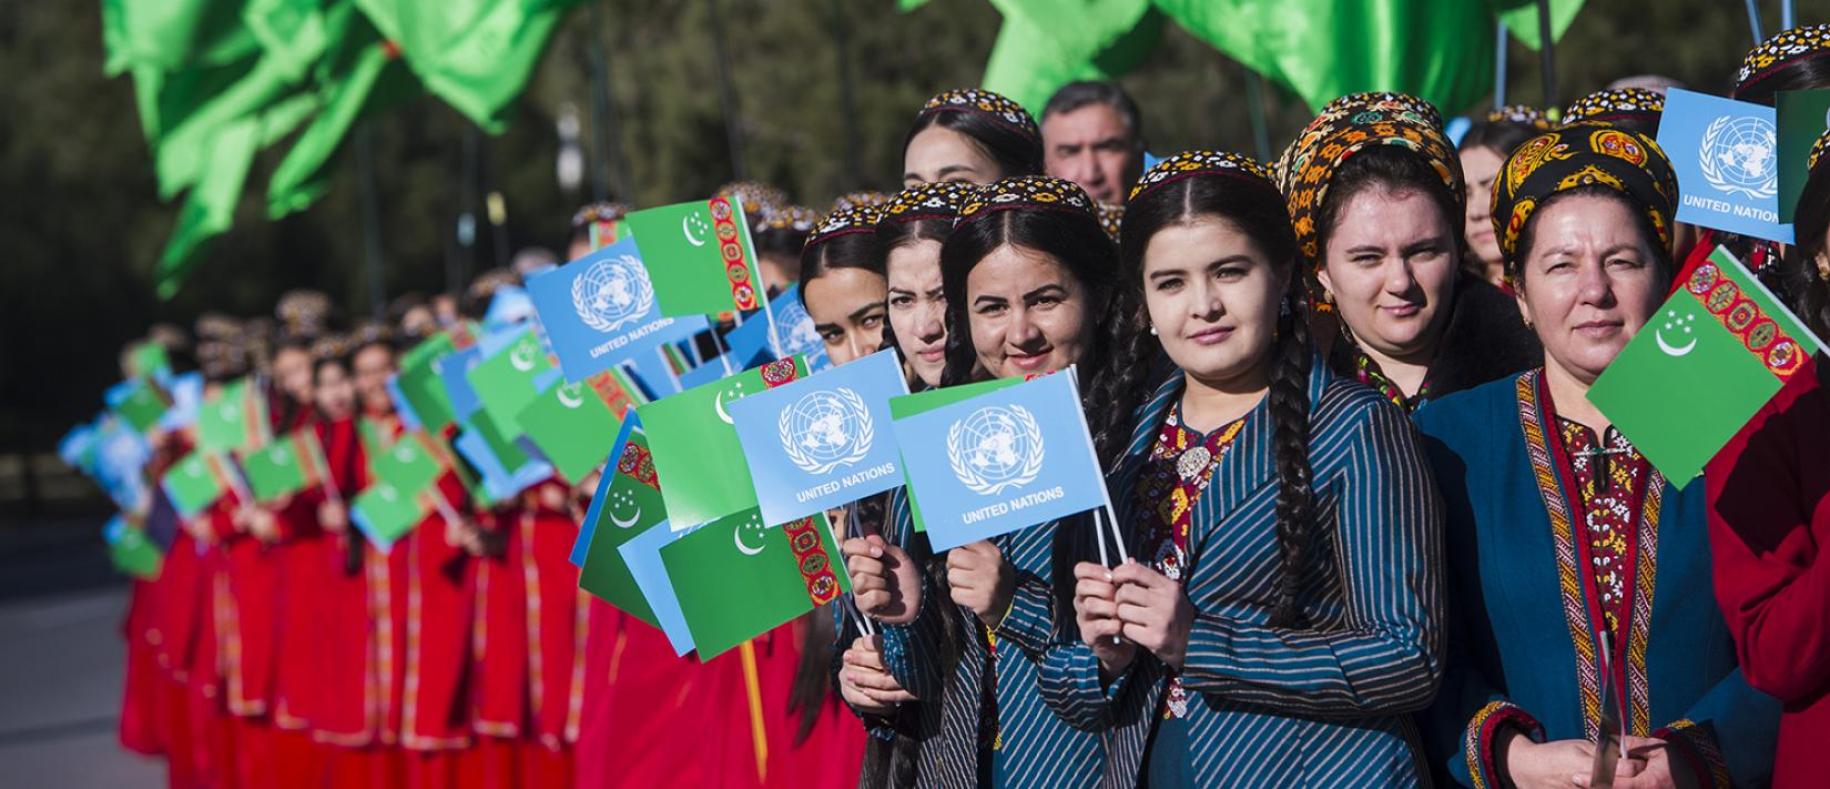 شابات يحملن علم الأمم المتحدة وتركمانستان أثناء احتفالهن بافتتاح دار الأمم المتحدة.